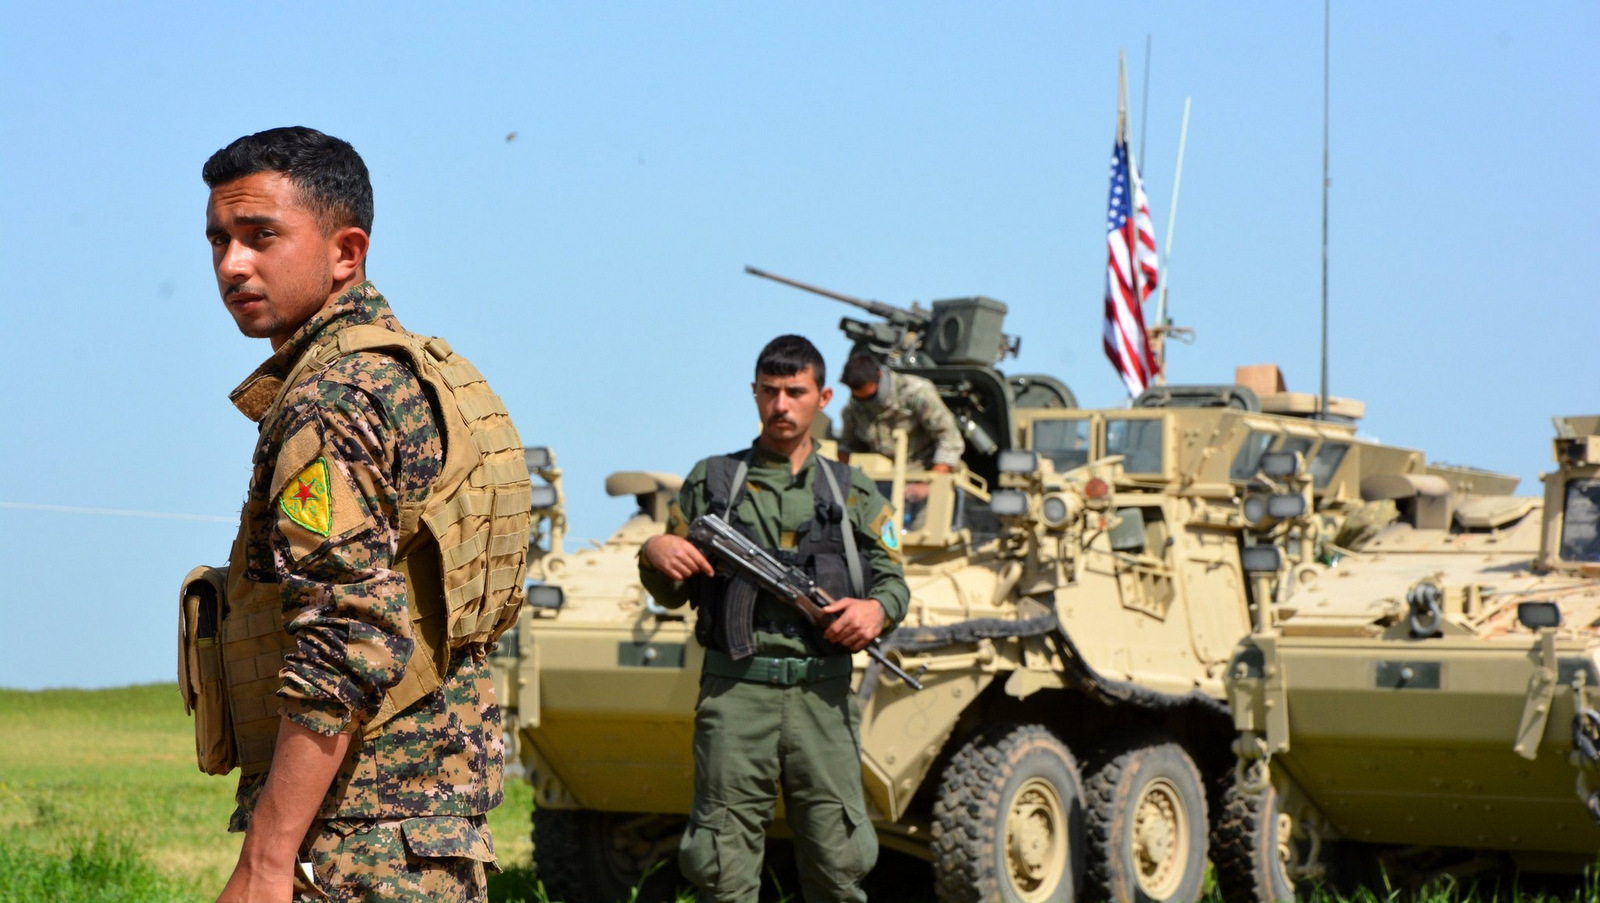 Βίντεο: Οι ΗΠΑ συνεχίζουν να παραδίδουν όπλα στο YPG παρά την συμφωνία με την Τουρκία!